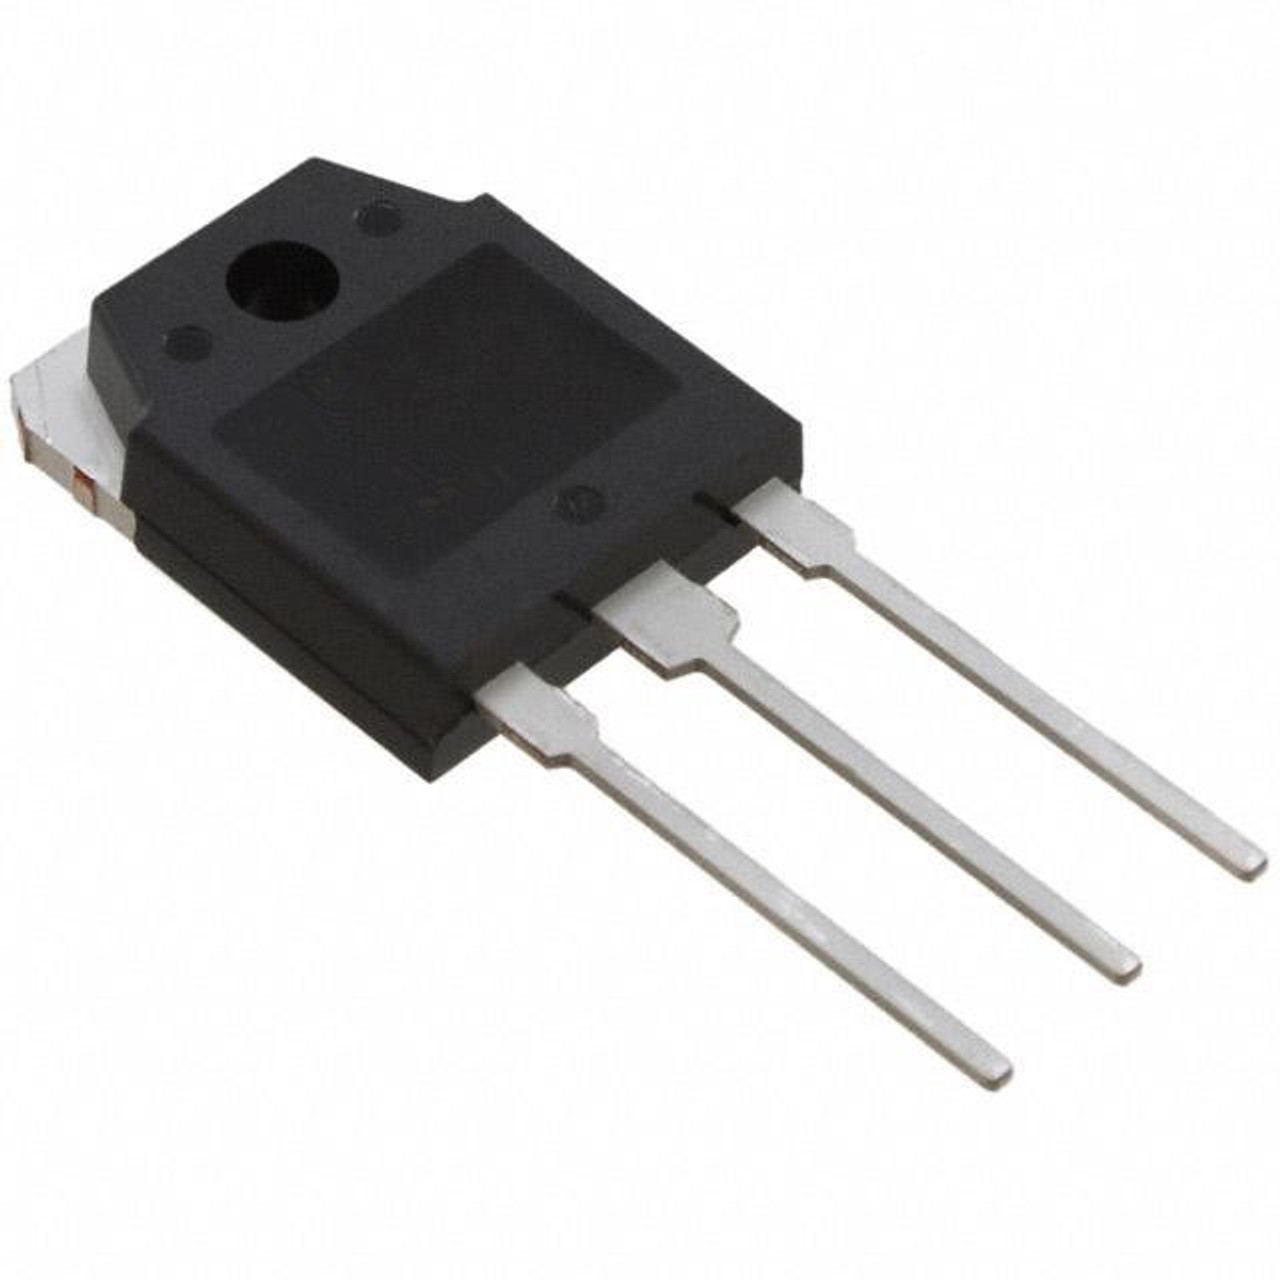 K1518 : 2SK1518 ; Transistor N-MOSFET 500V 20A 120W 0.22Ω, TO-3P GDS